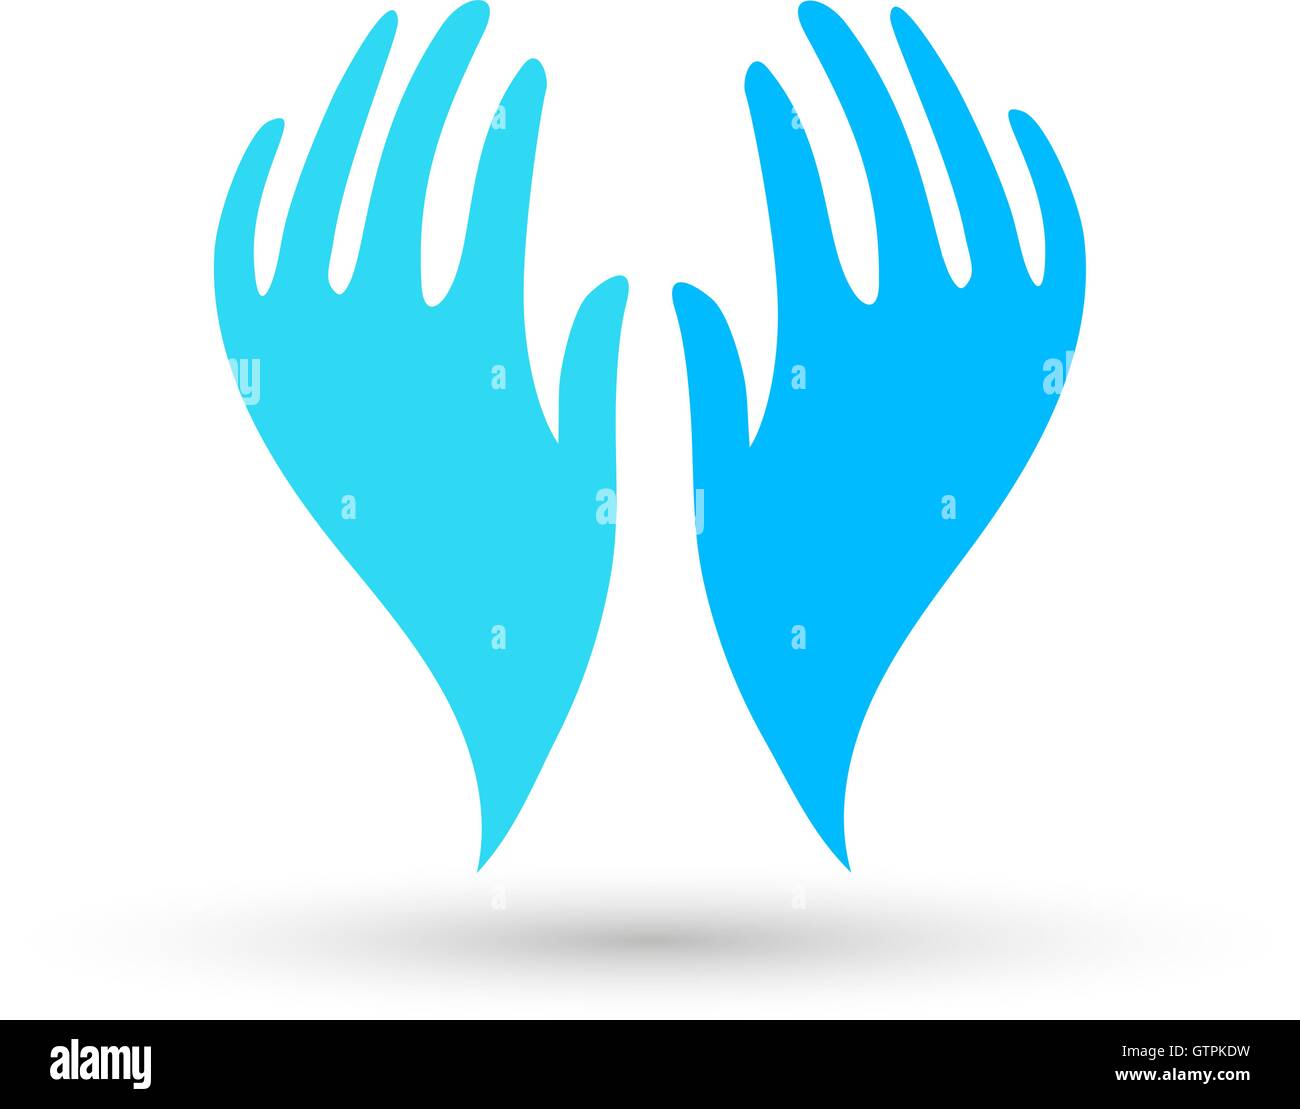 Isolierte blaue Vektor-Hände-Logo. Zeichen zu unterstützen. Pflegesymbol. Hilfsbereite Menschen. Symbol der Menschheit. Handcreme-Emblem. Freundlichkeit Interessenvertreter Stock Vektor